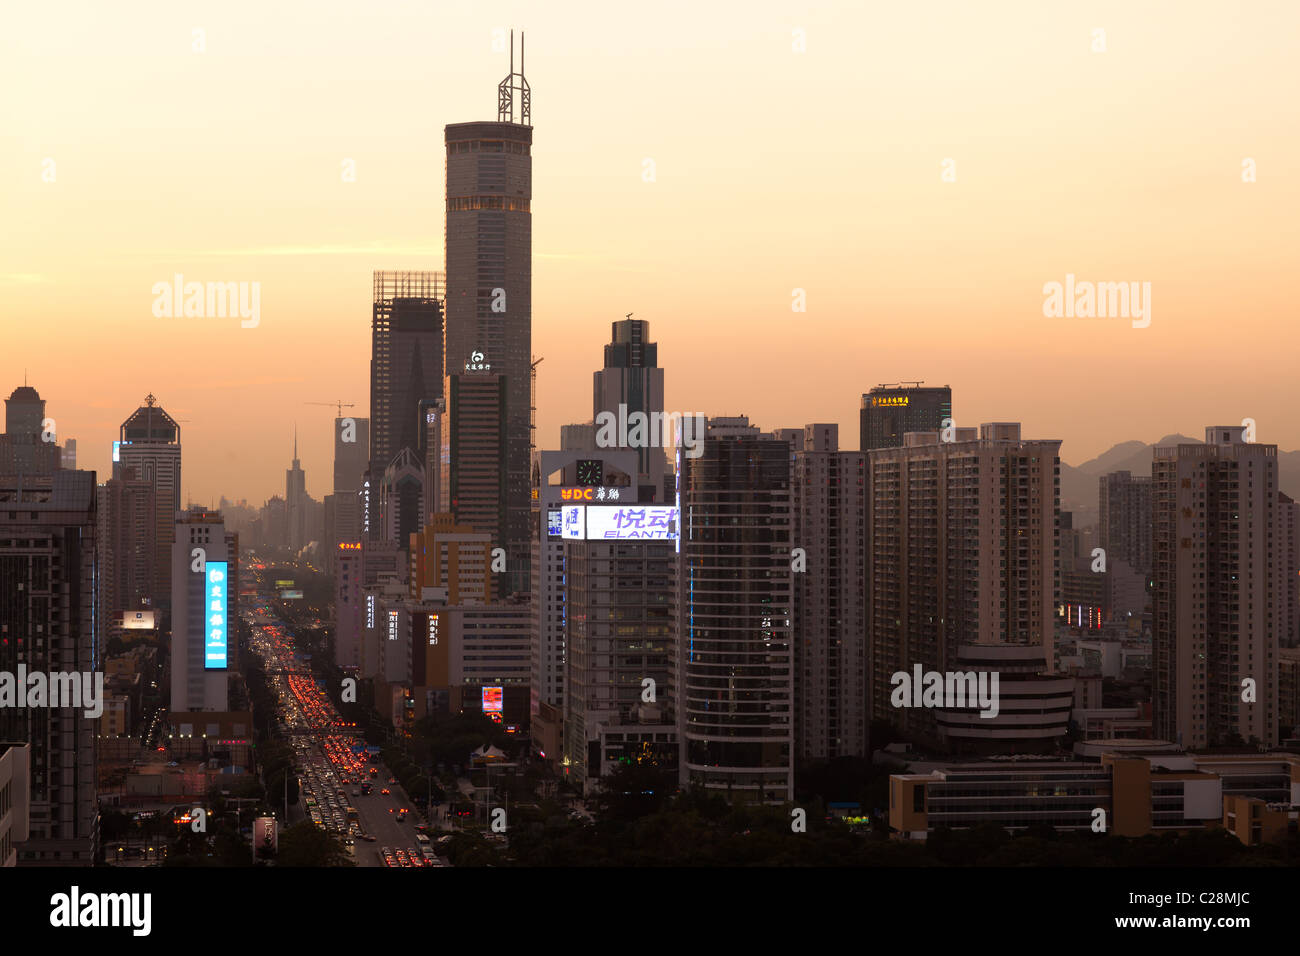 Skyline of Shenzhen in dusk. Stock Photo